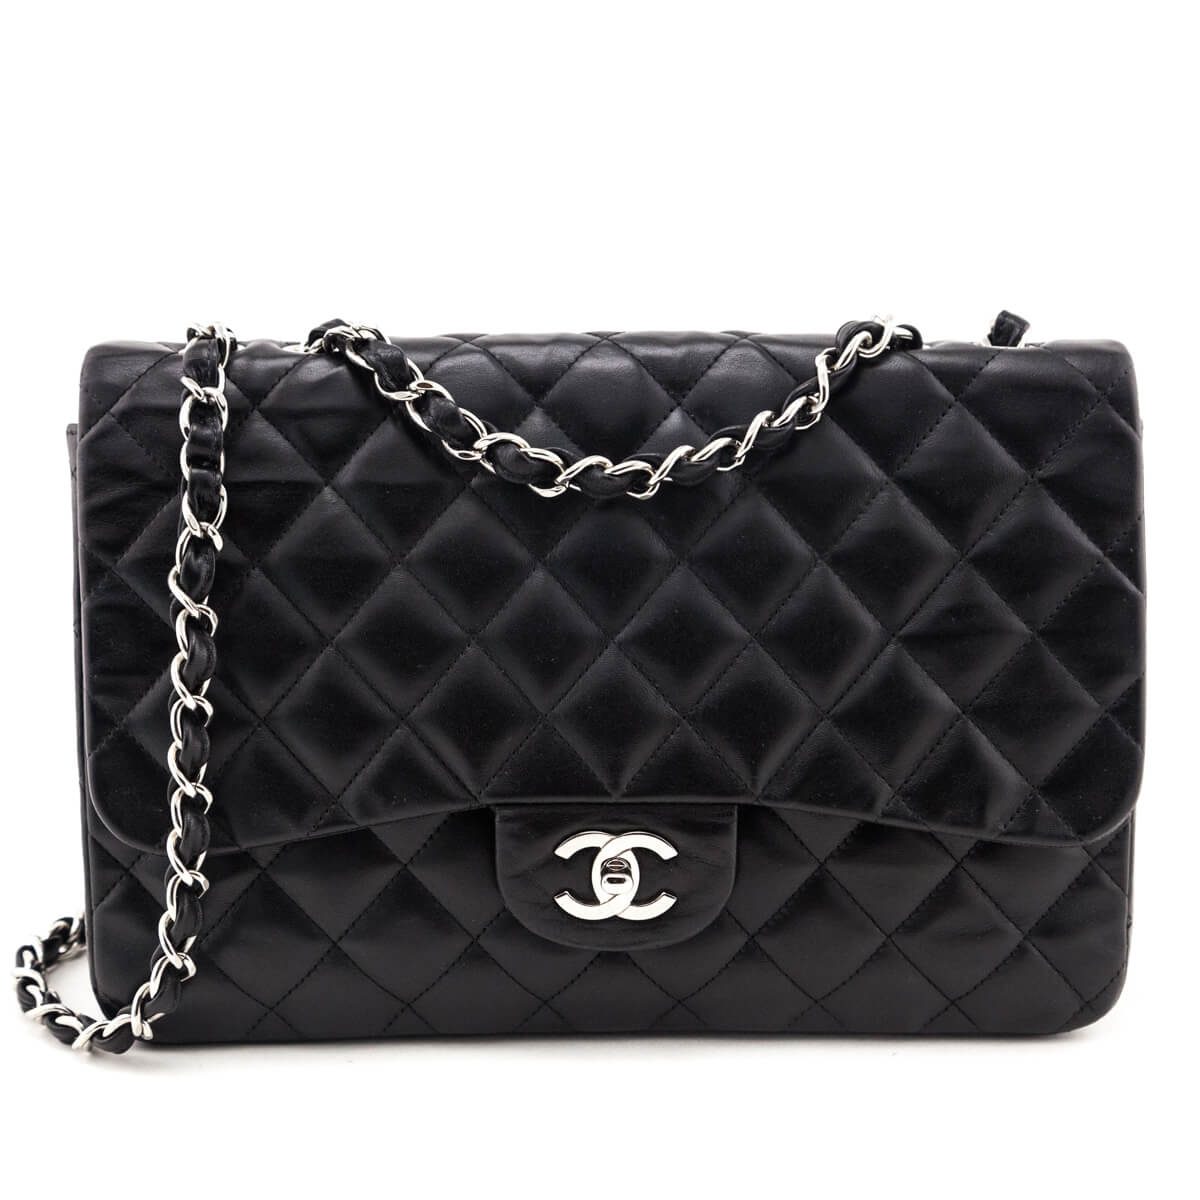 Chanel - Preowned Designer Handbags & Clothing - Love that Bag etc – Love  that Bag etc - Preowned Designer Fashions